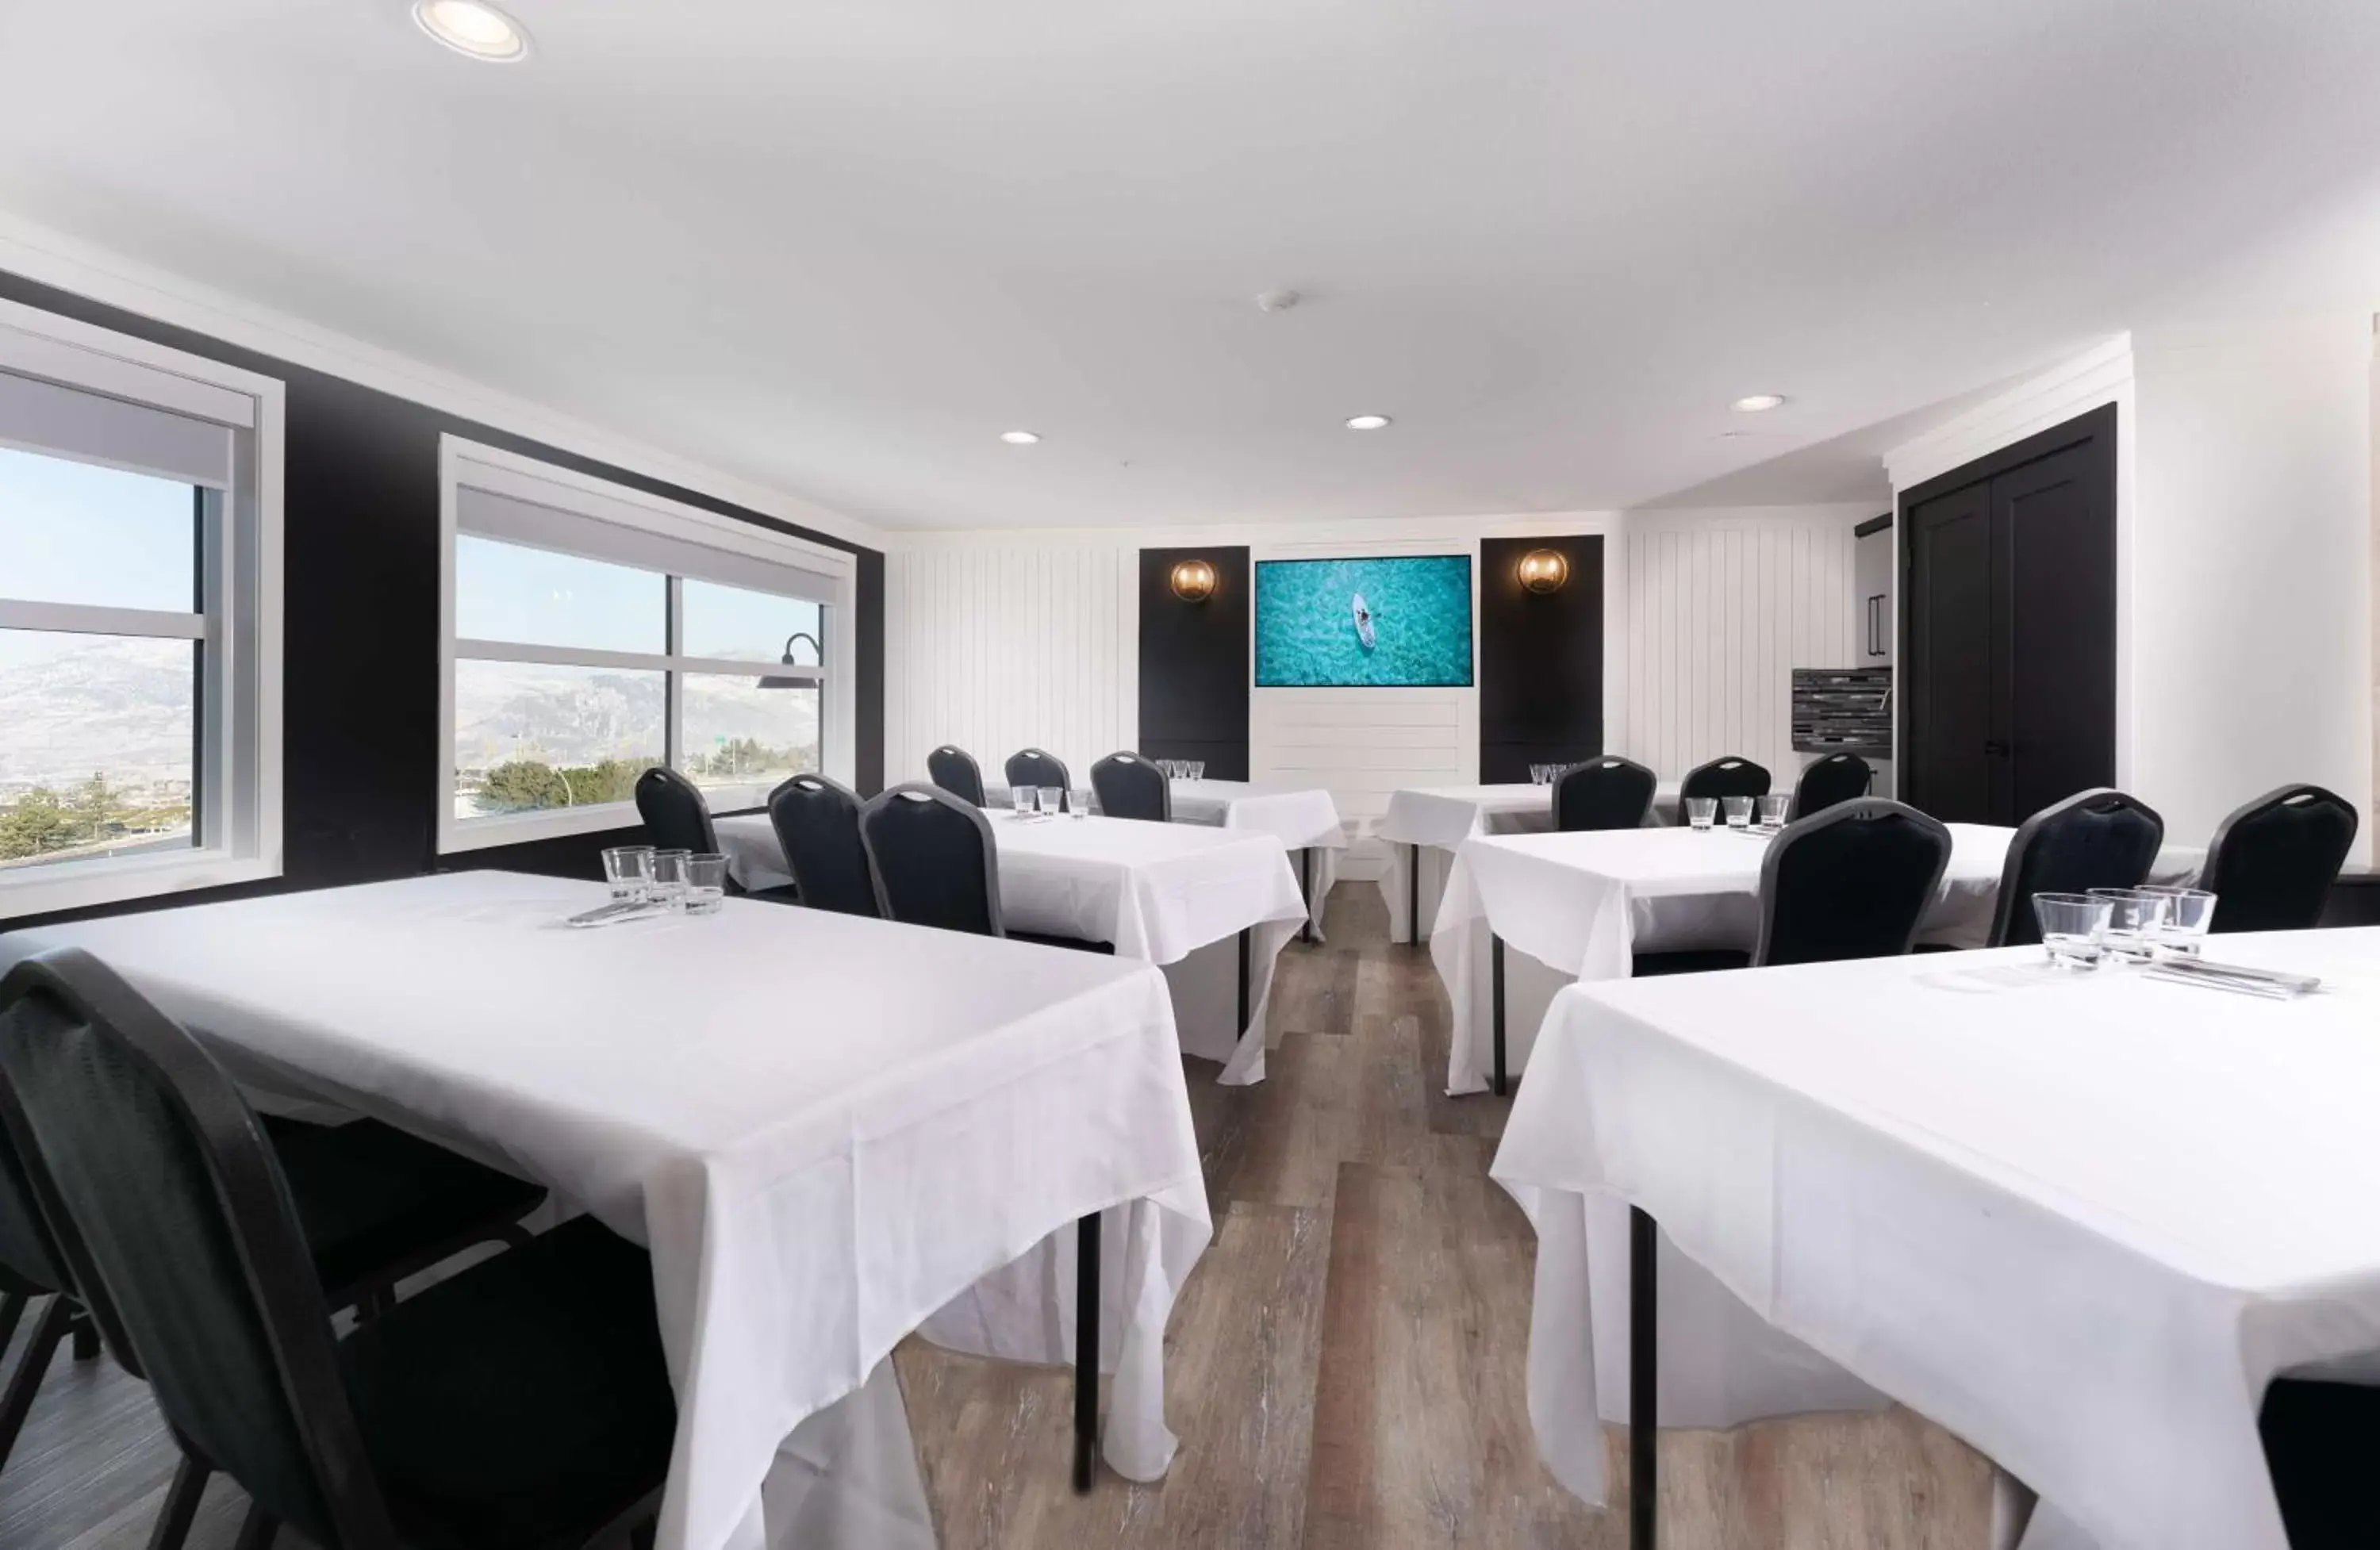 Meeting/conference room in Prestige Kamloops Hotel